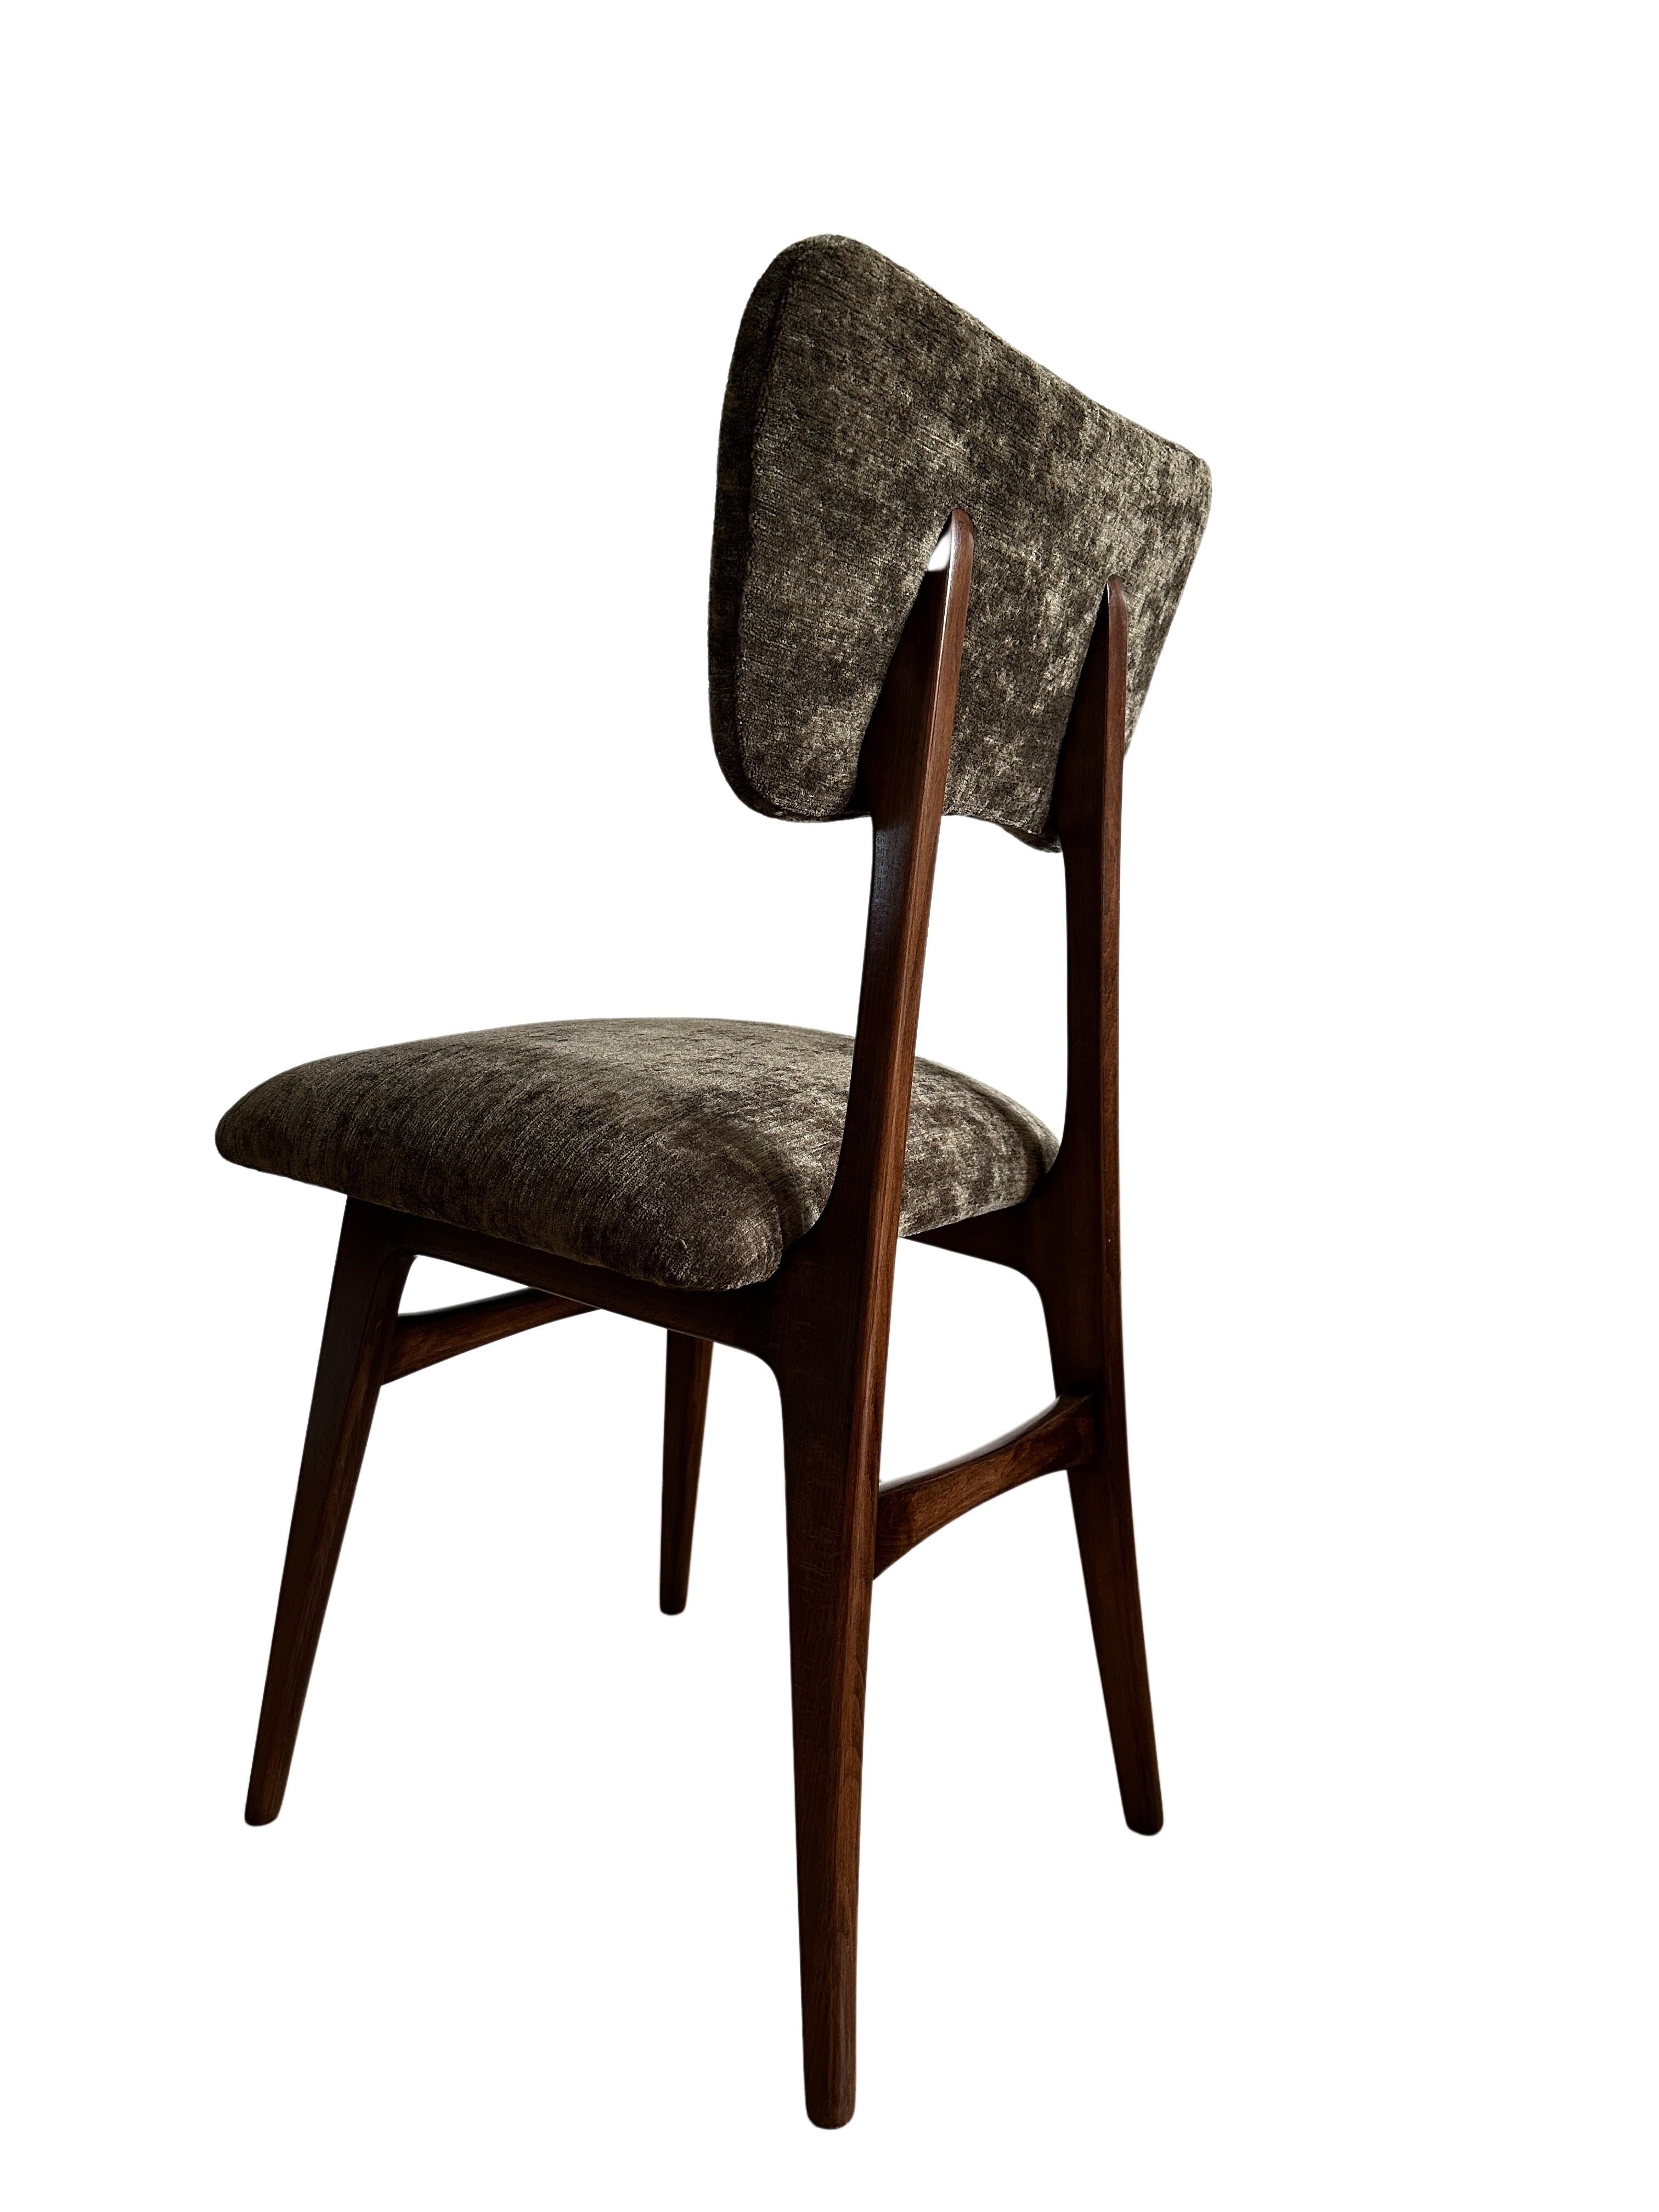 Einzigartiger, in den 1960er Jahren in Polen hergestellter Stuhl, entworfen von Rajmund Halas. 

Die Polsterung besteht aus dunkelgrünem Samtstoff, der die Farben der Natur widerspiegelt. Es ist ein weicher, feiner, gewebter Polstersamt. Der Stoff